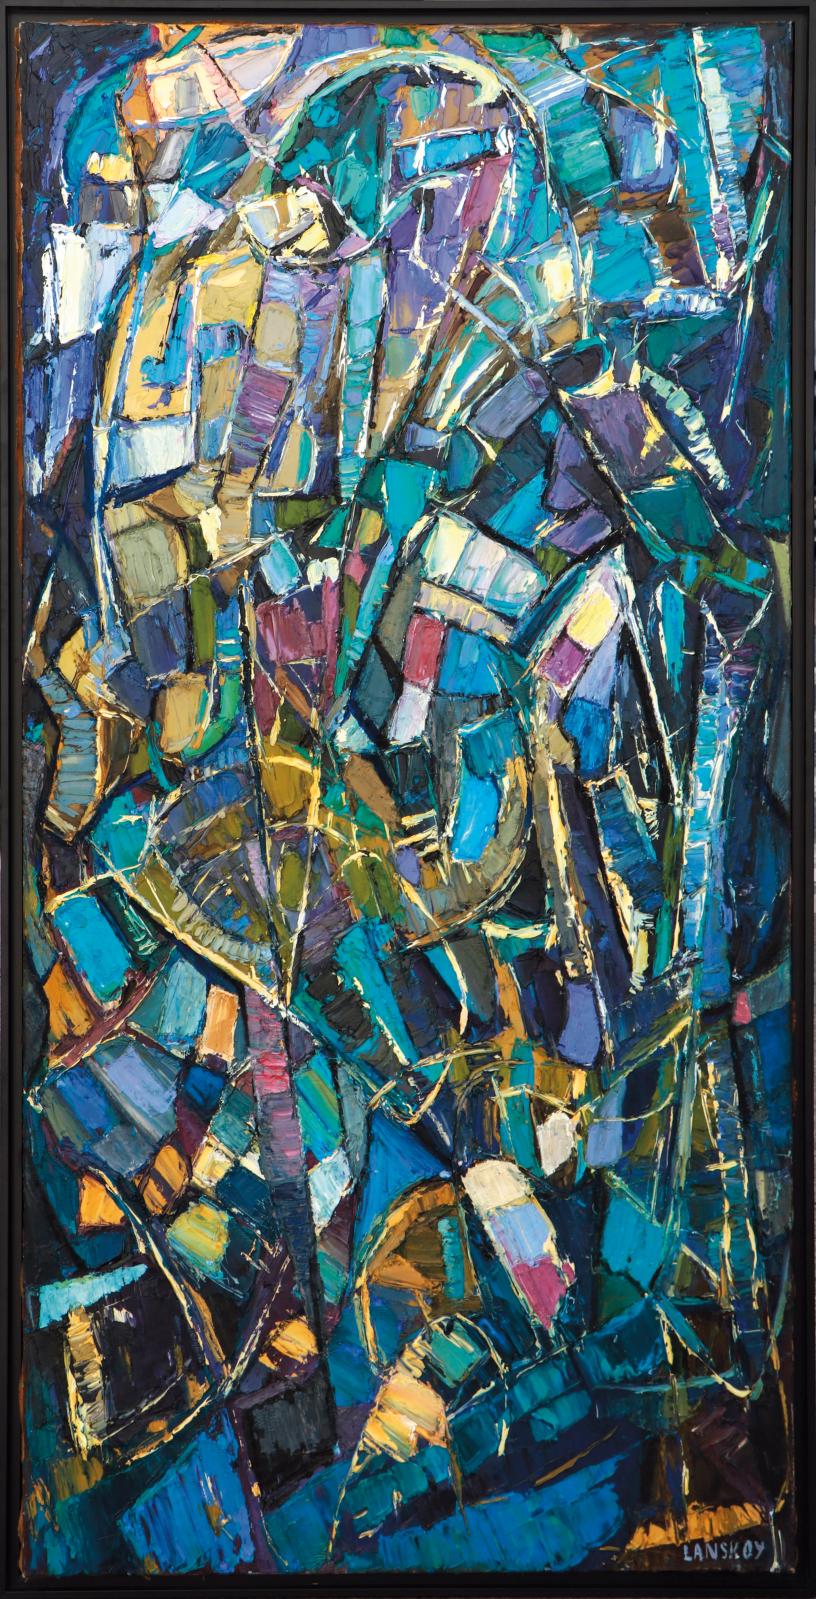 Place à l’art lyrique avec cette Composition abstraite réalisée à l’huile sur toile, vers 1967, par André Lanskoy (1902-1976). Il faudra e